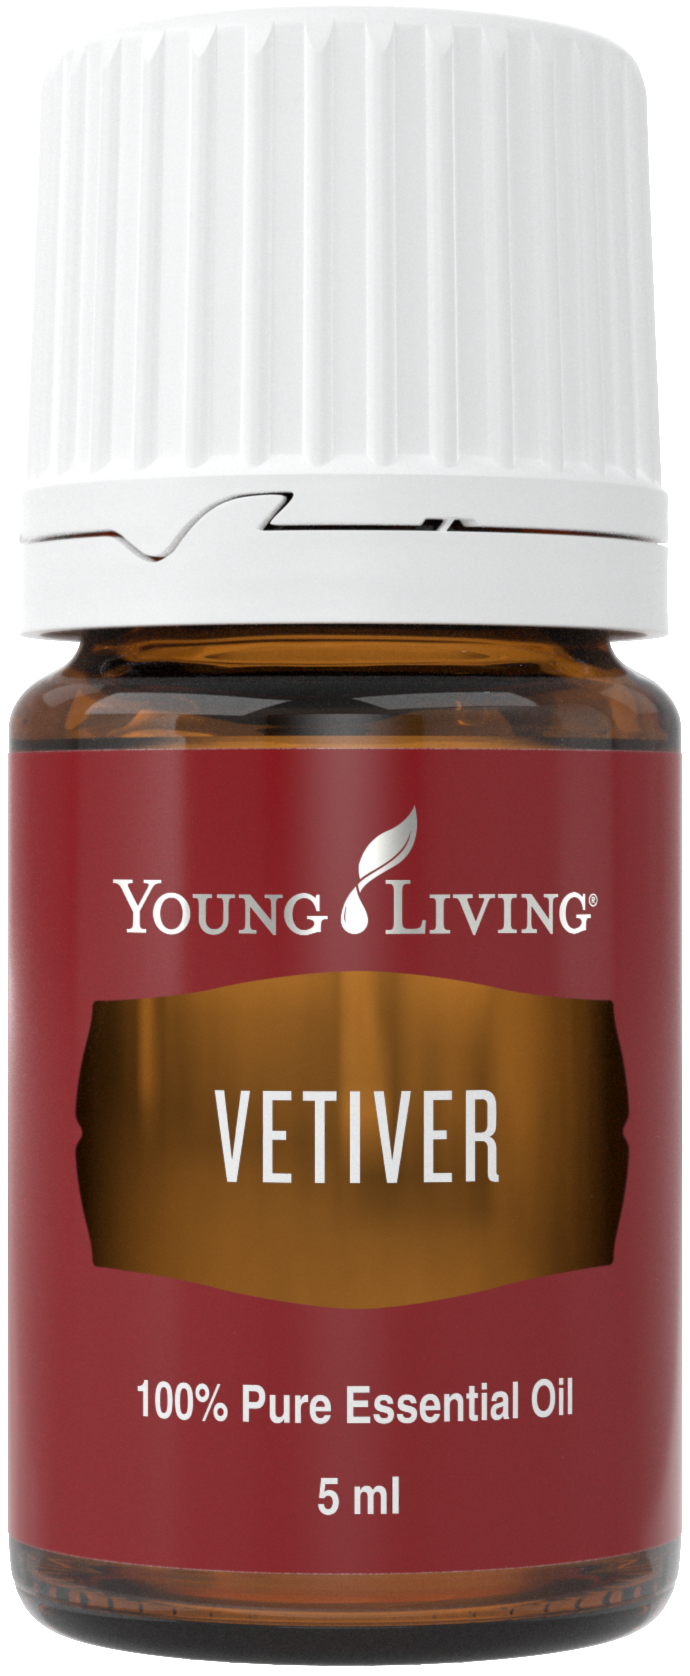 Manfaat minyak esensial Vetiver dan menggunakan Young Living